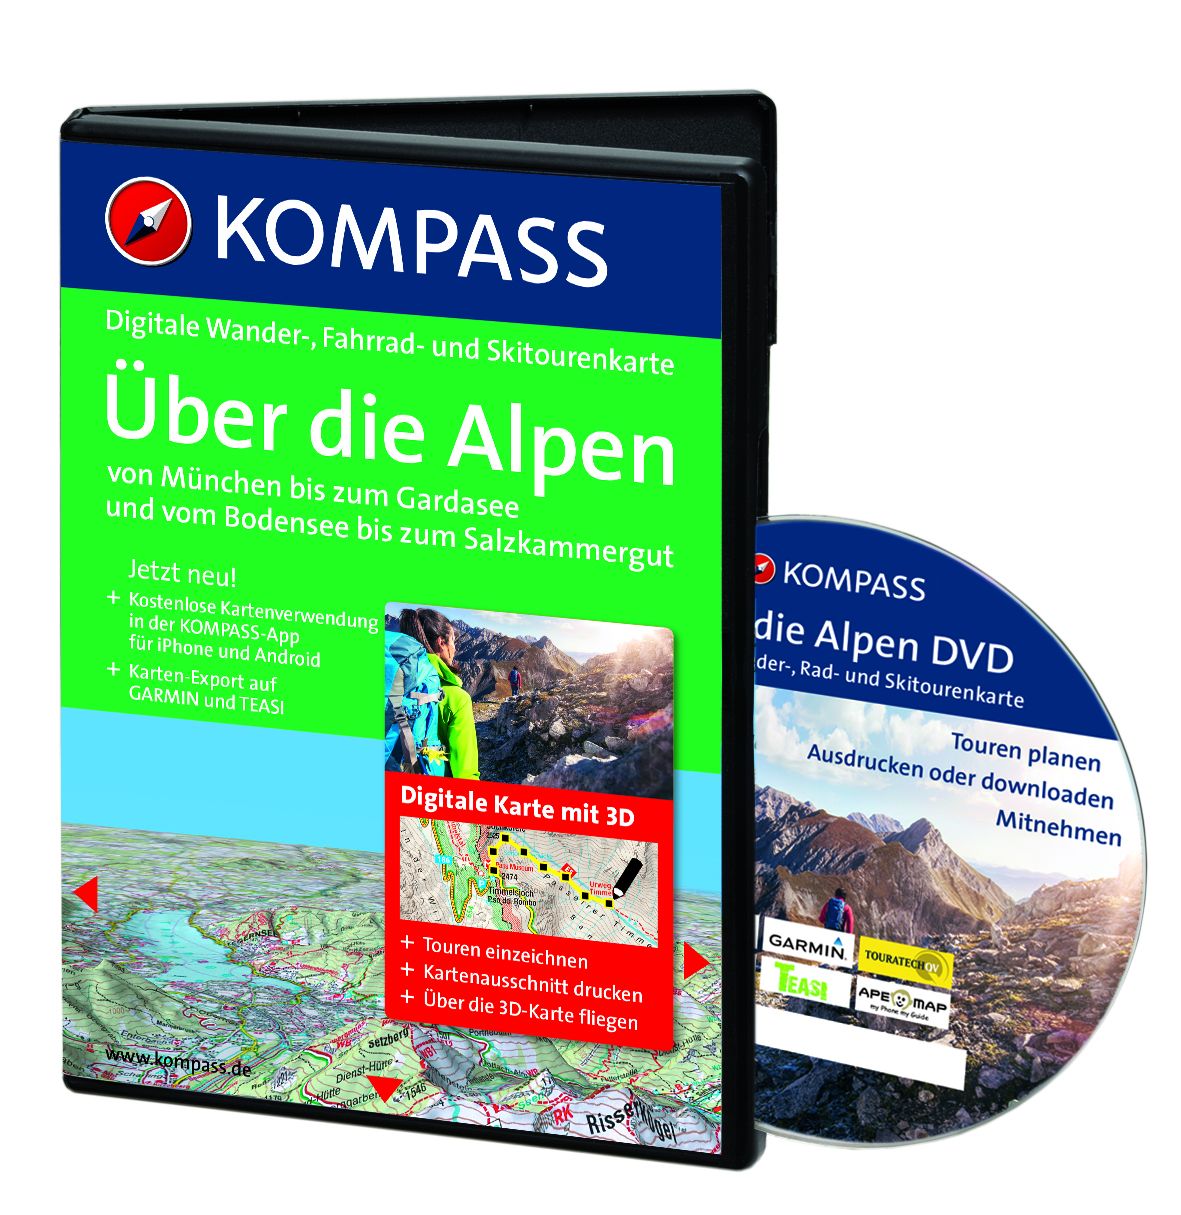 Kompass DVDs - Fotos, Test & News